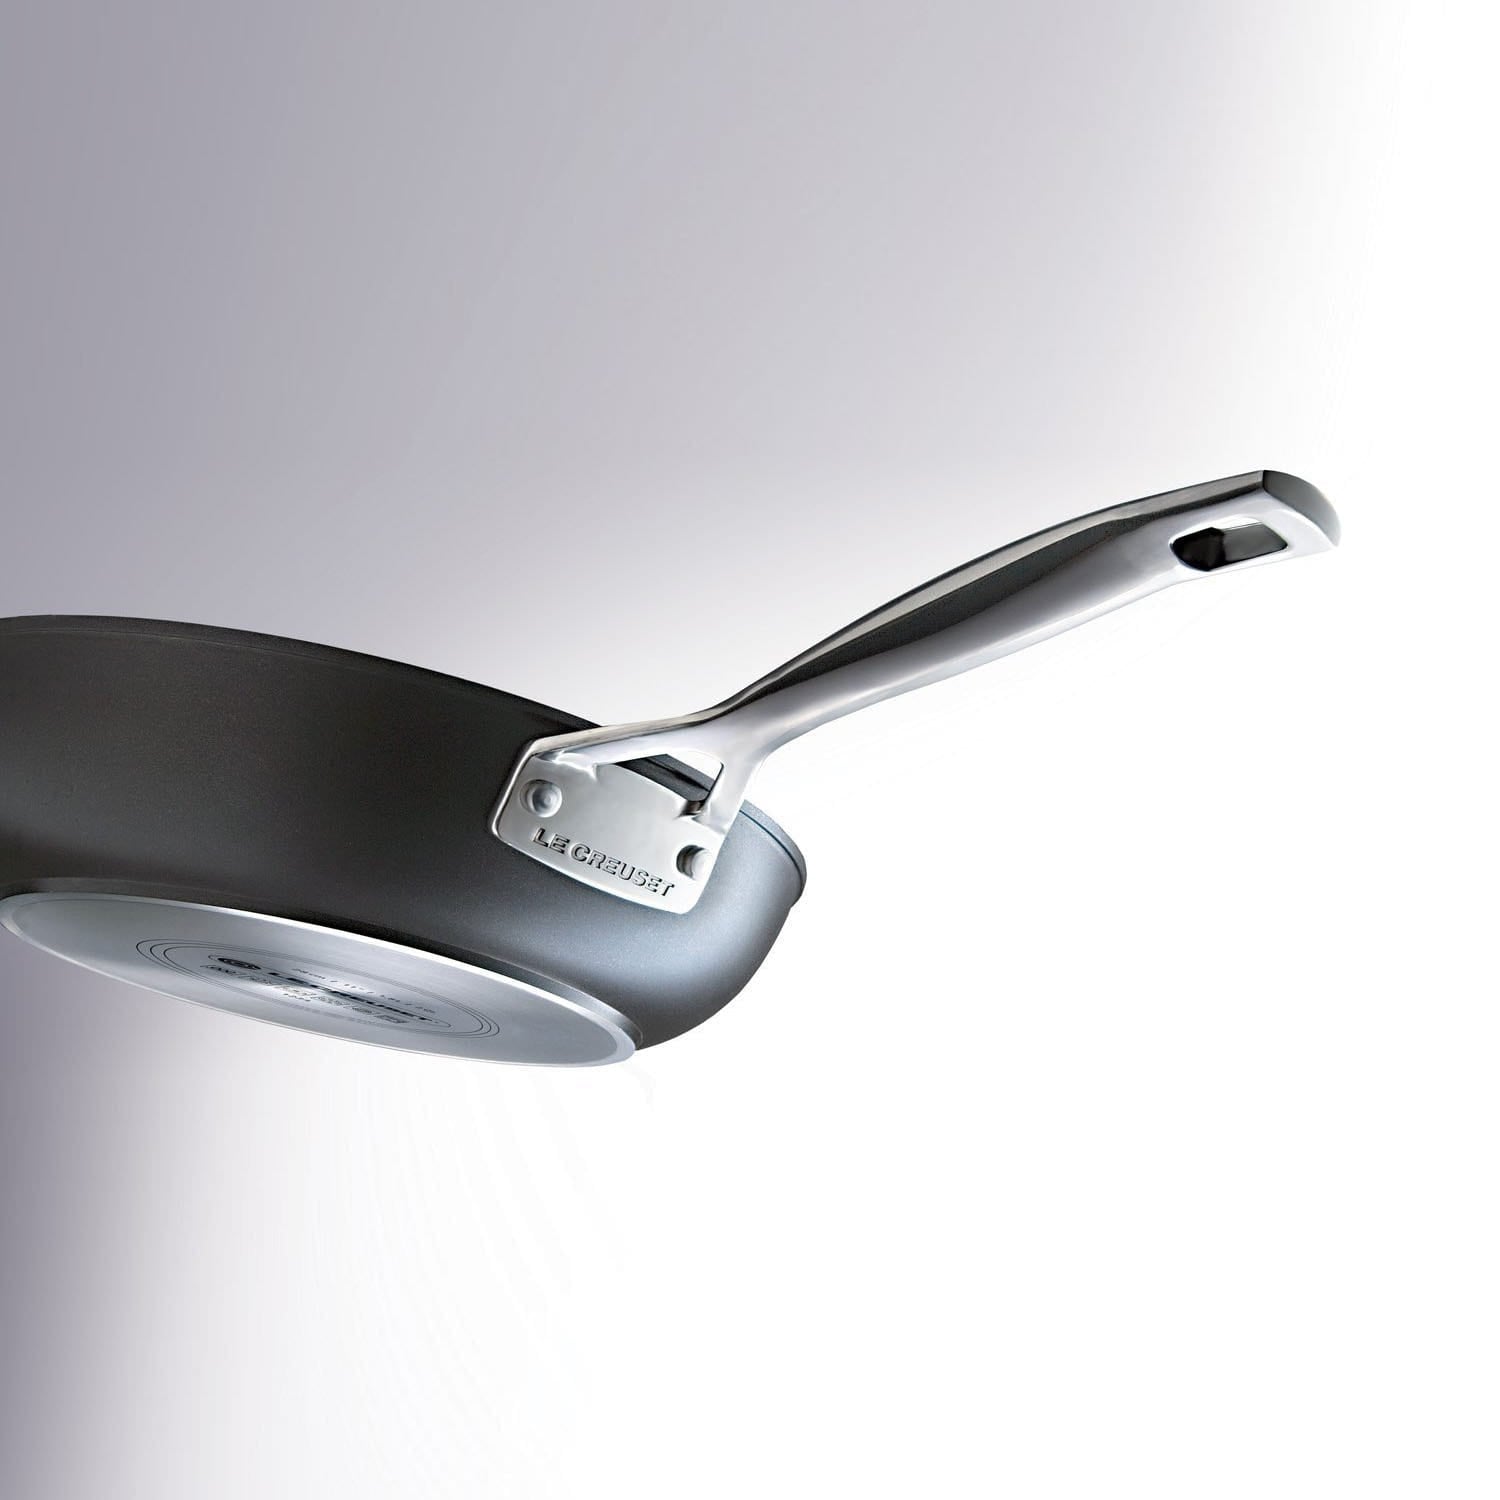 LE CREUSET - Toughened Non-Stick aluminium sauté pan with glass lid and  helper handle 26cm